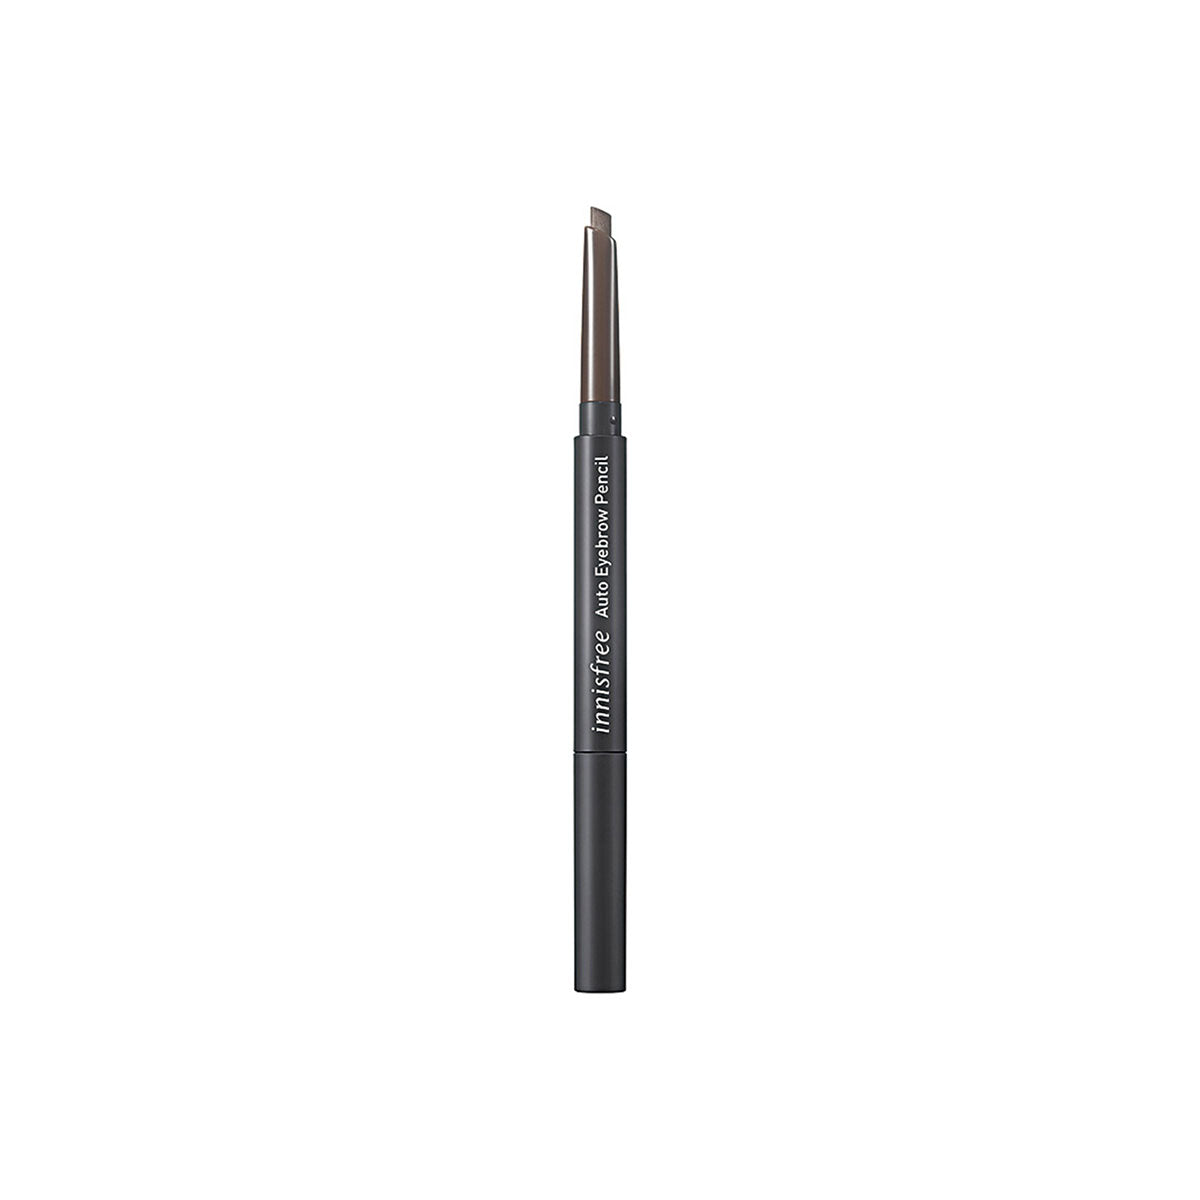 Auto Eyebrow Pencil #5 Espresso Brown 0.3g